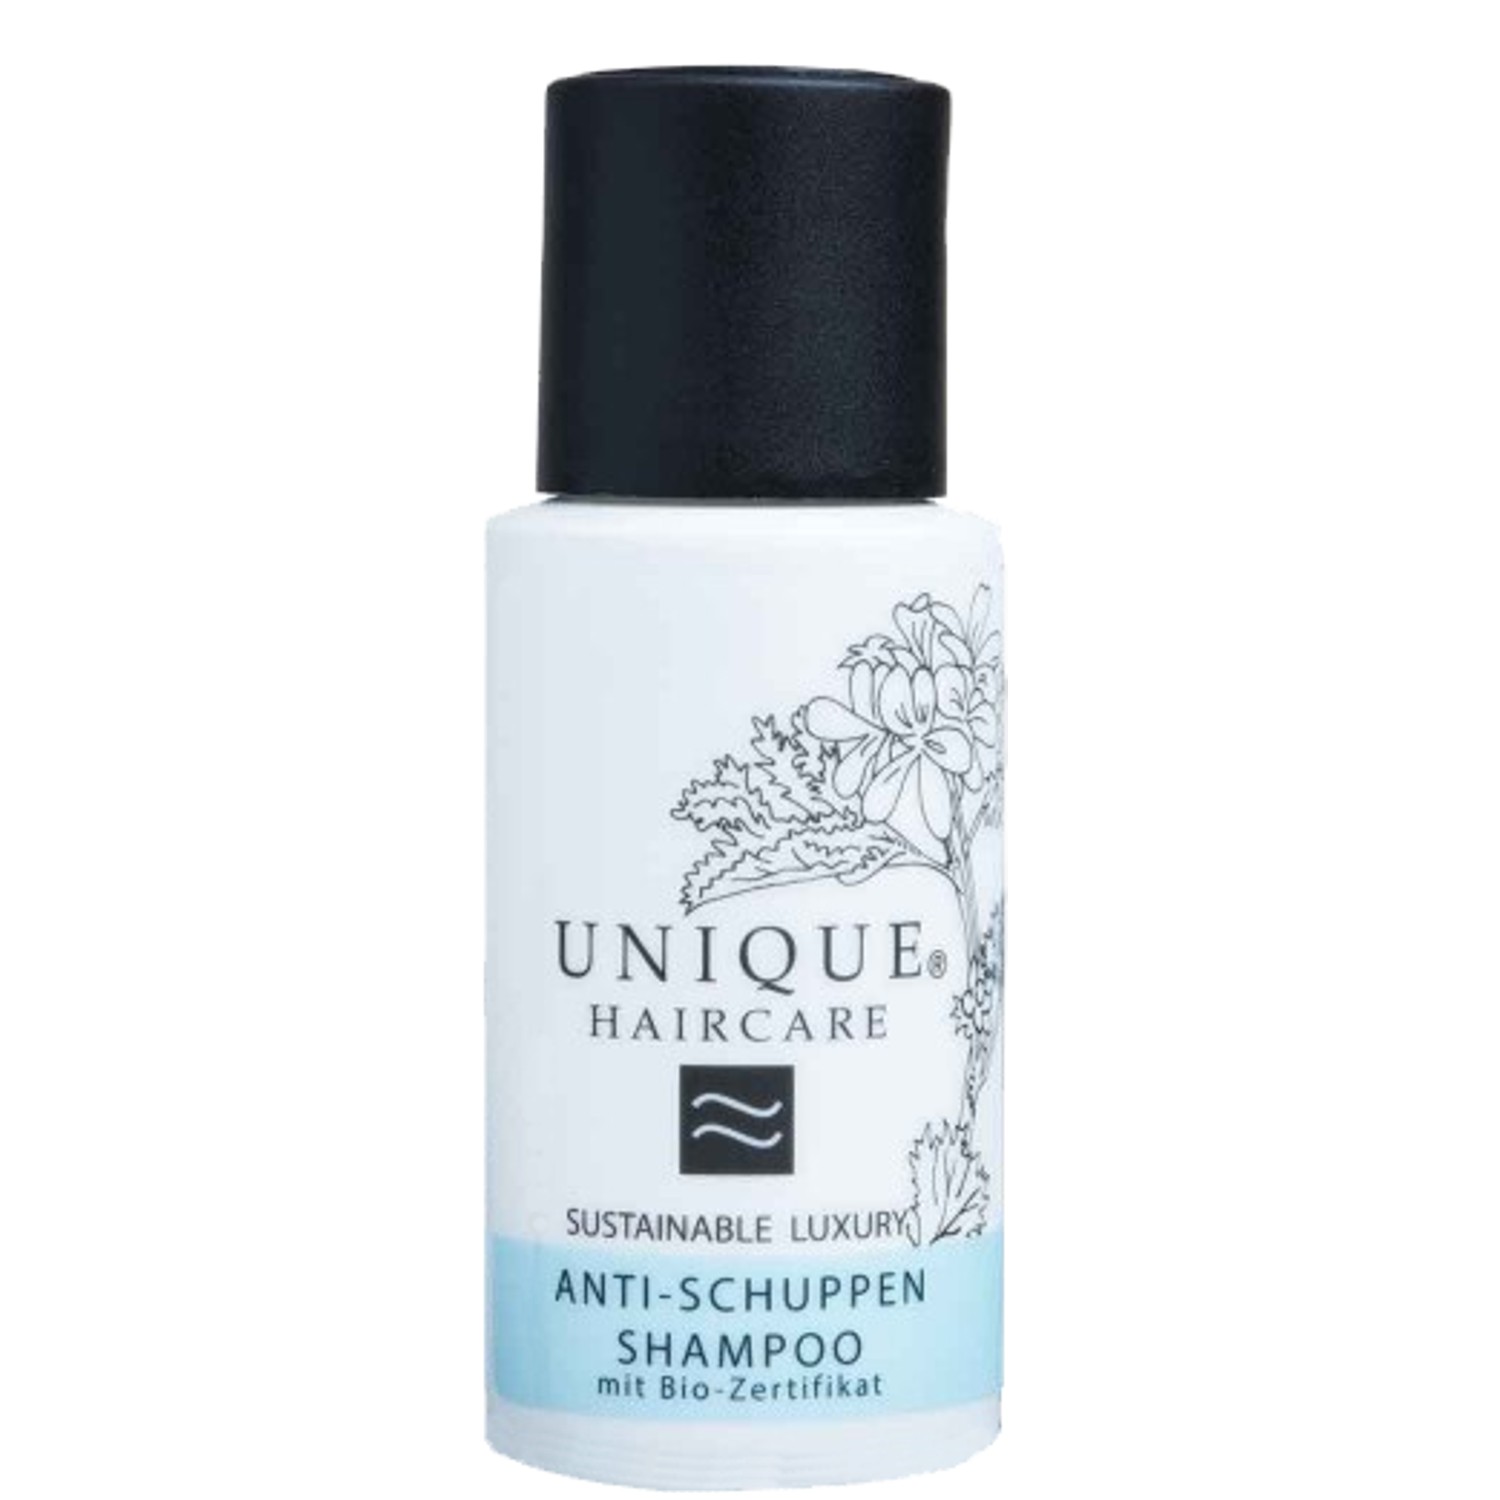 UNIQUE Haircare Anti-Schuppen Shampoo 50 ml